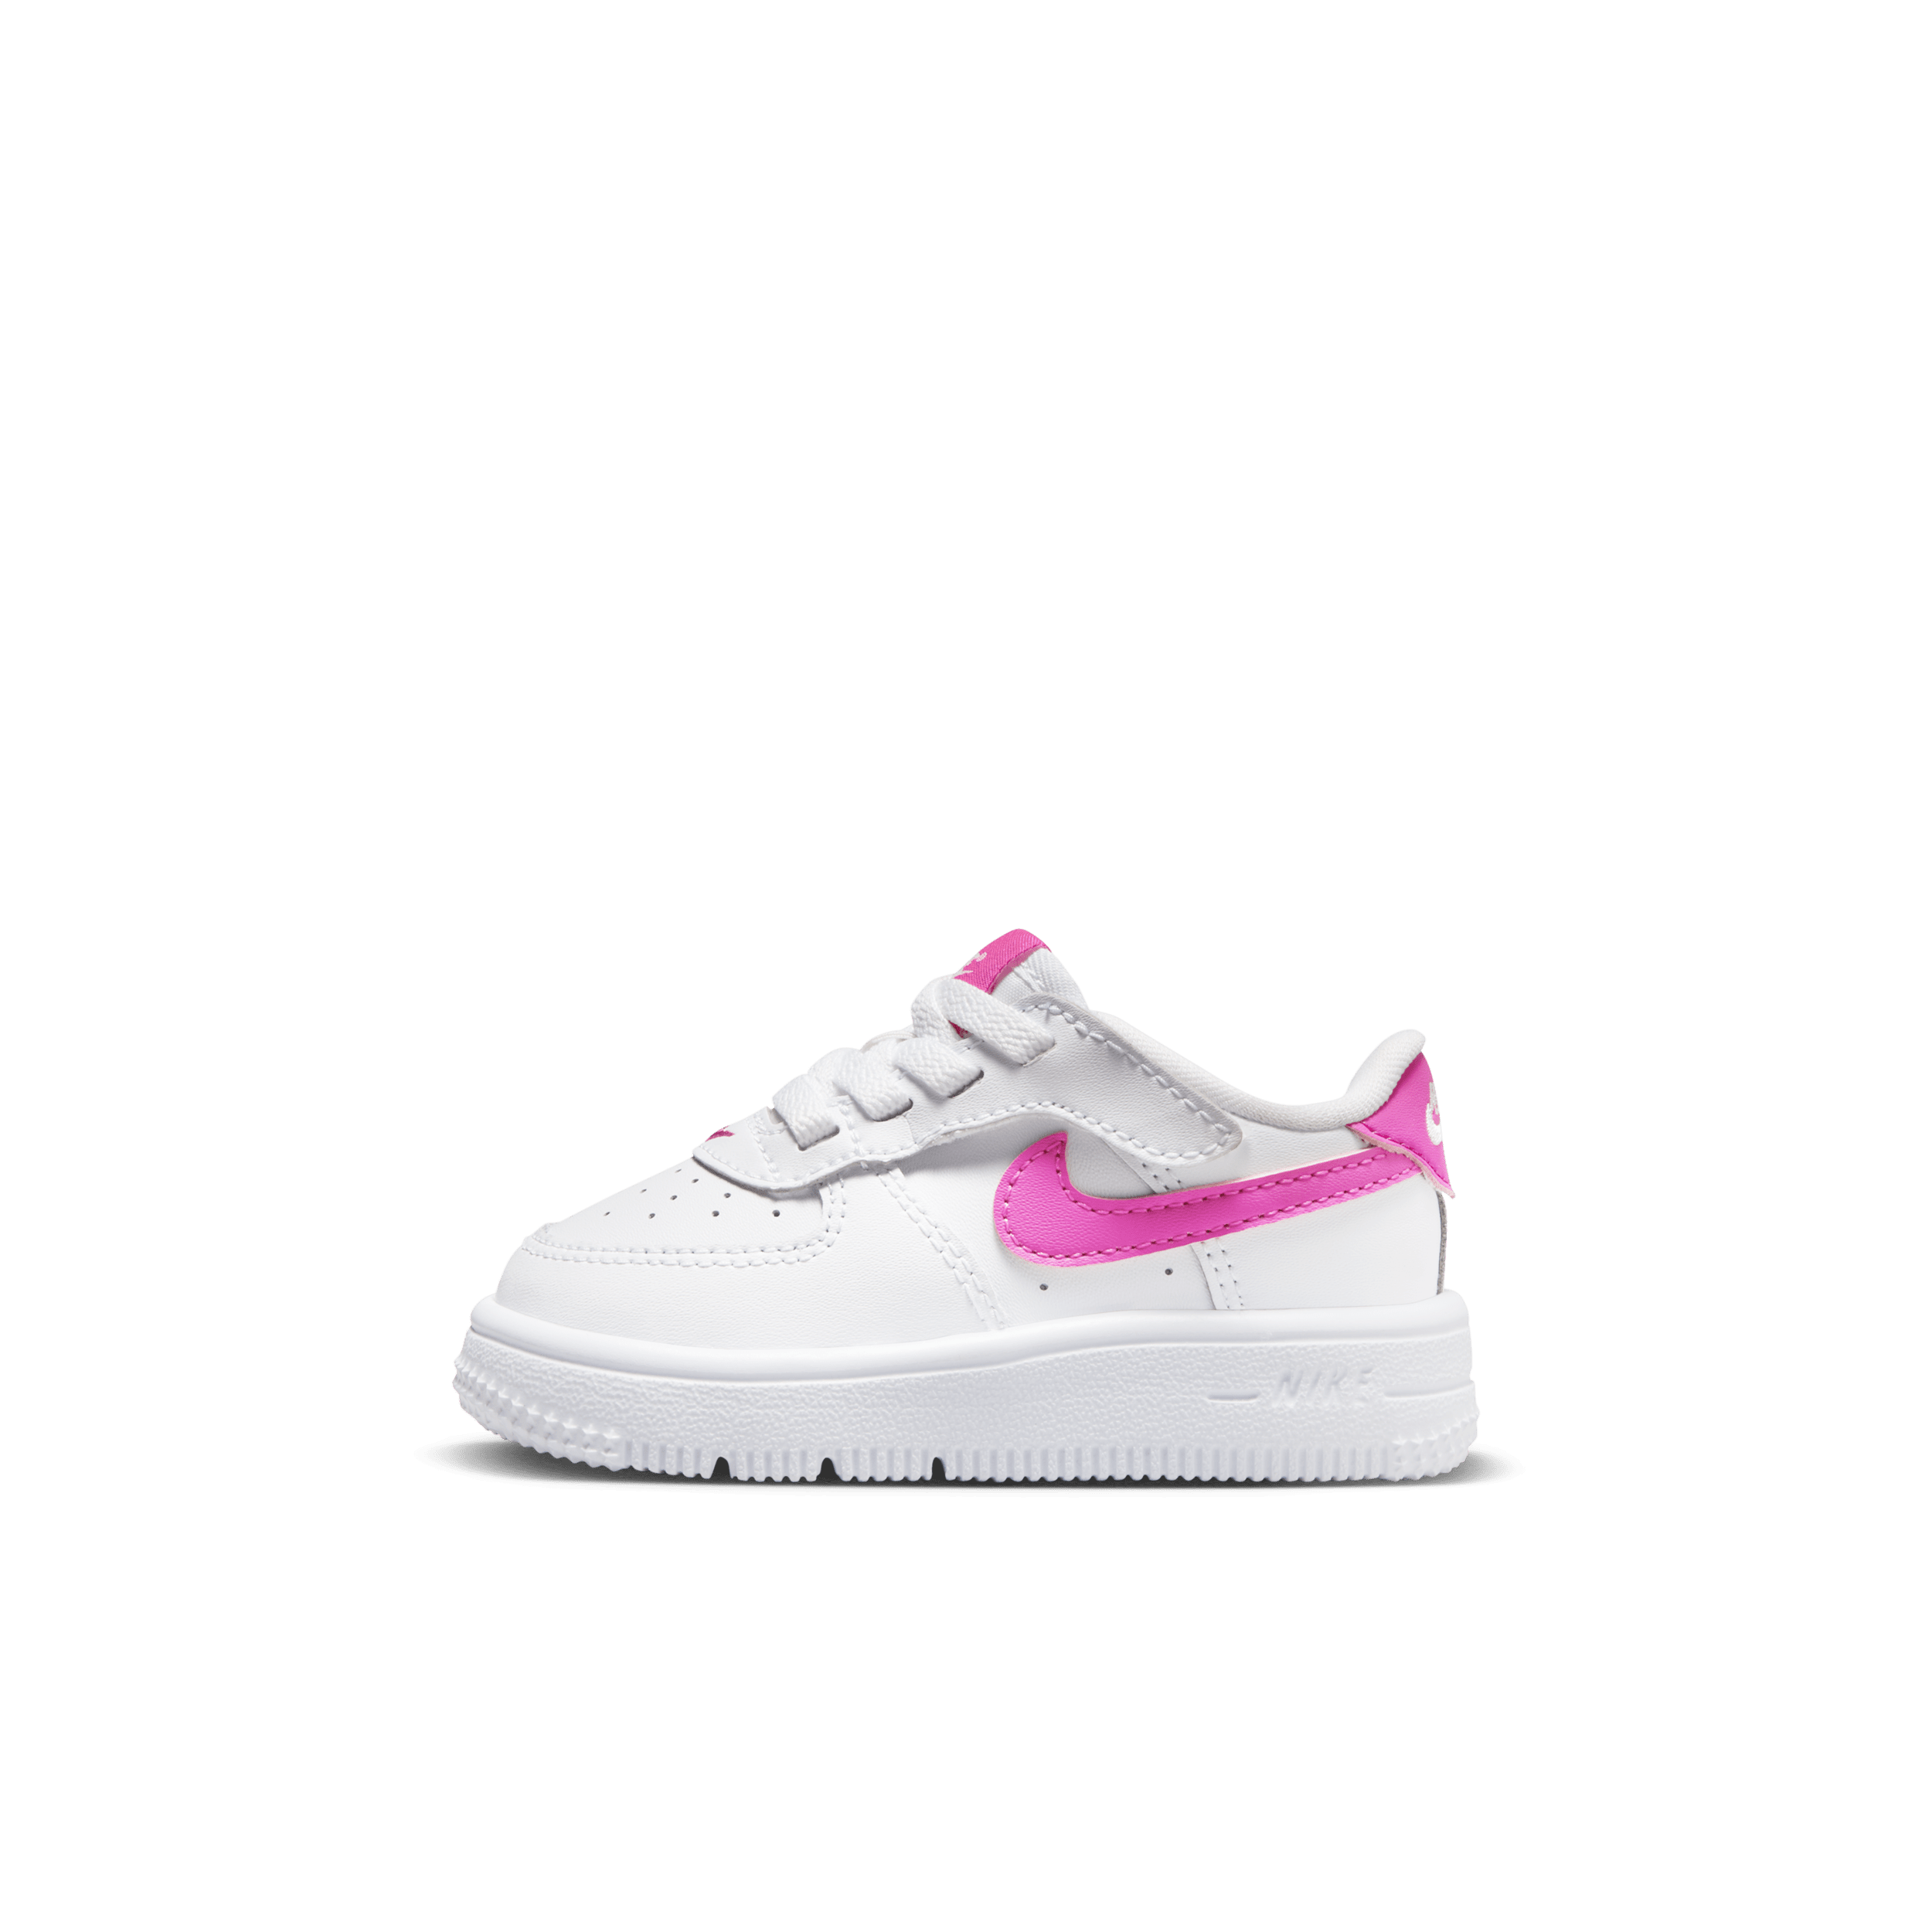 Nike Force 1 Low EasyOn schoenen voor baby's/peuters - Wit